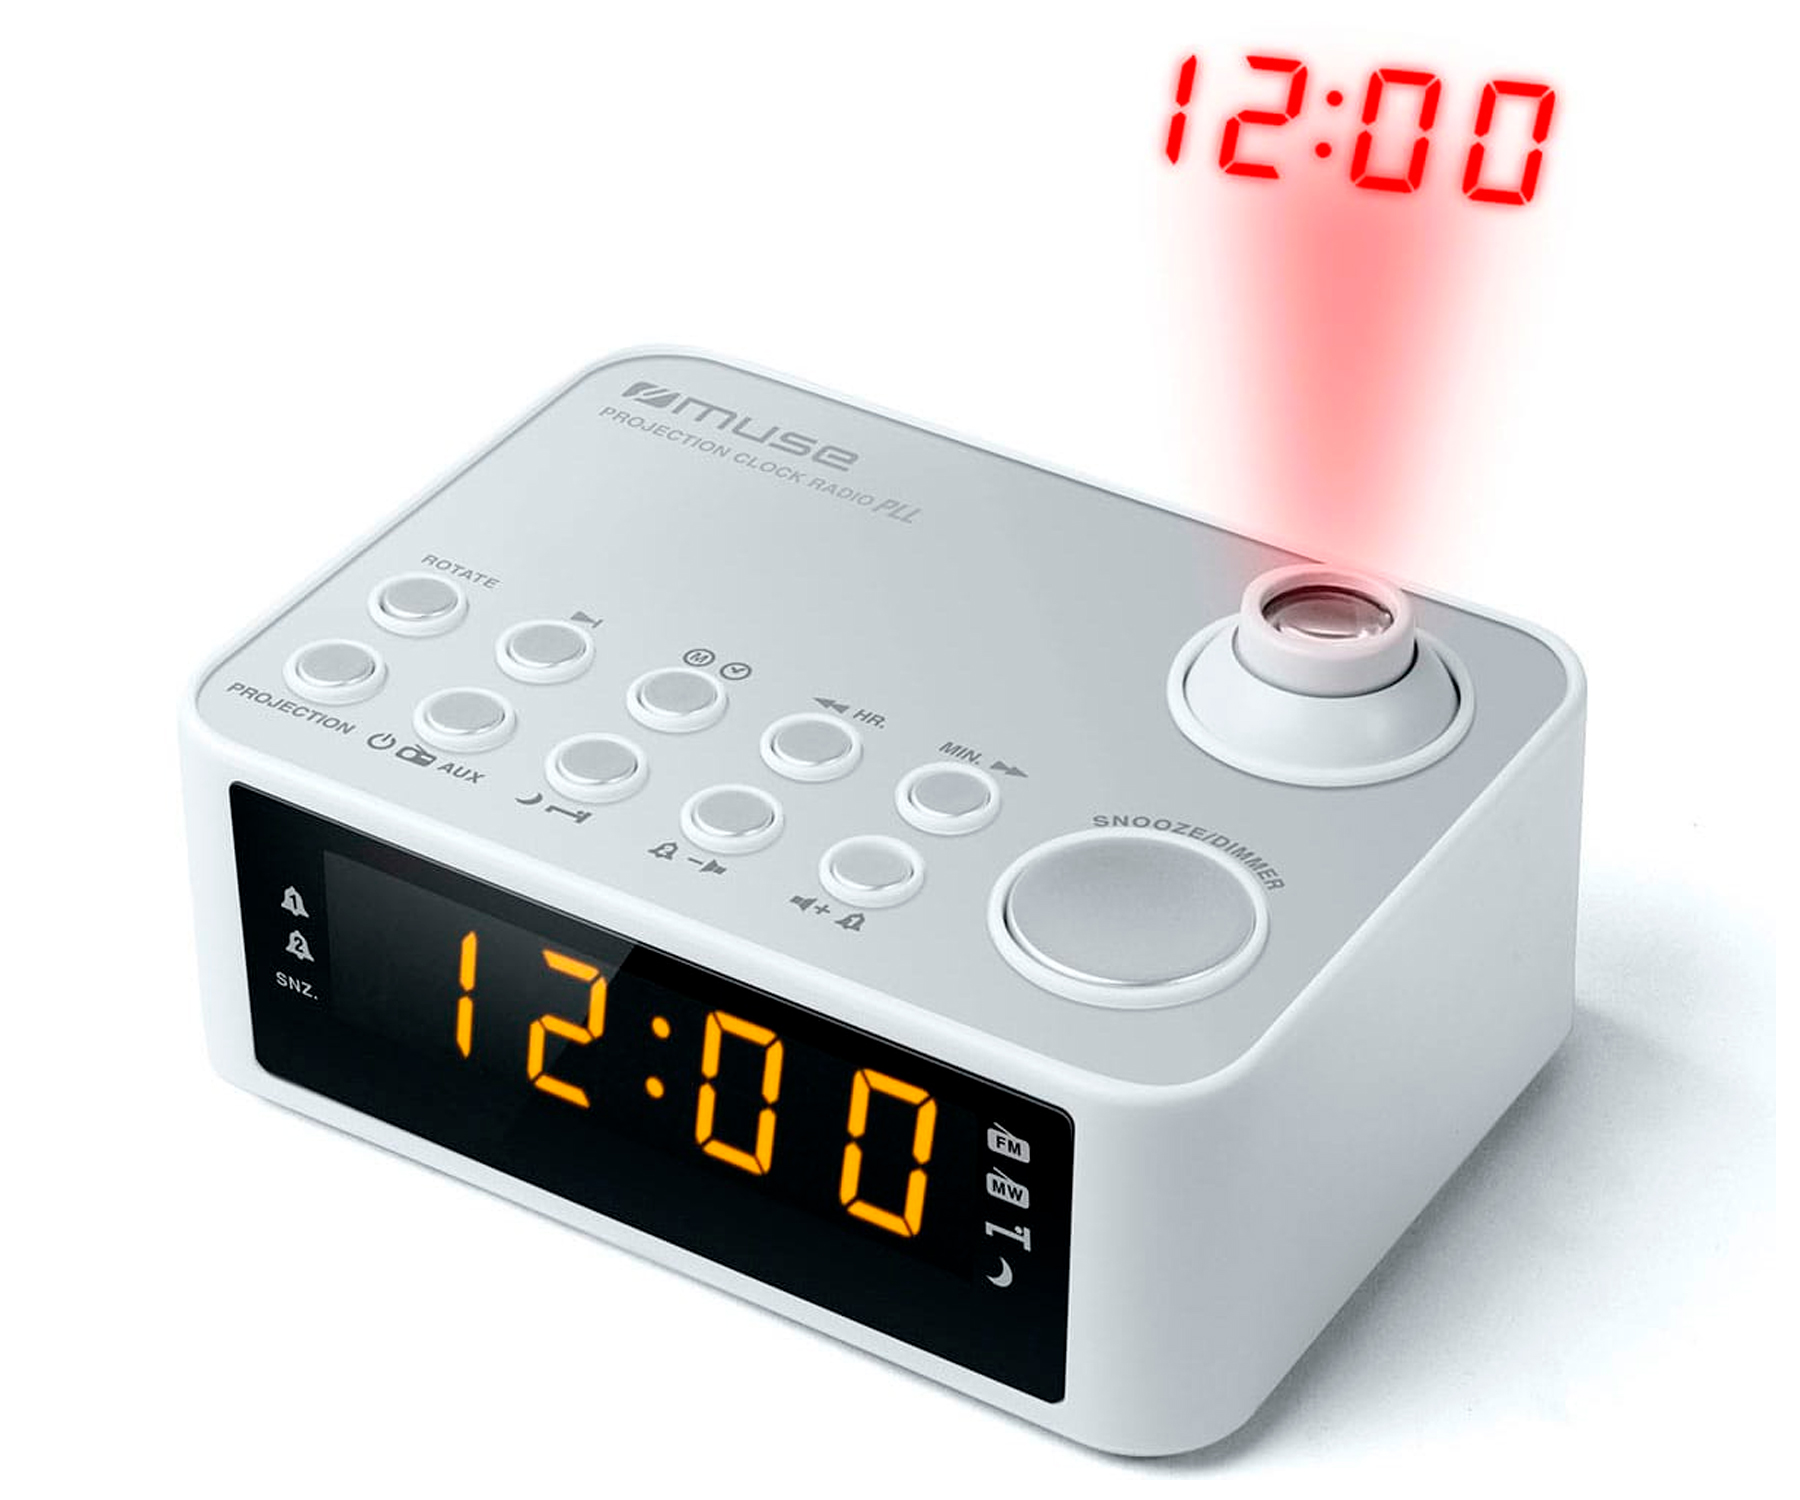 Despertador Muse M178 pw radio blanco ppl fmmw pilas y corriente alarma doble snooze m178pw color amfm con altavoz integrado proyector